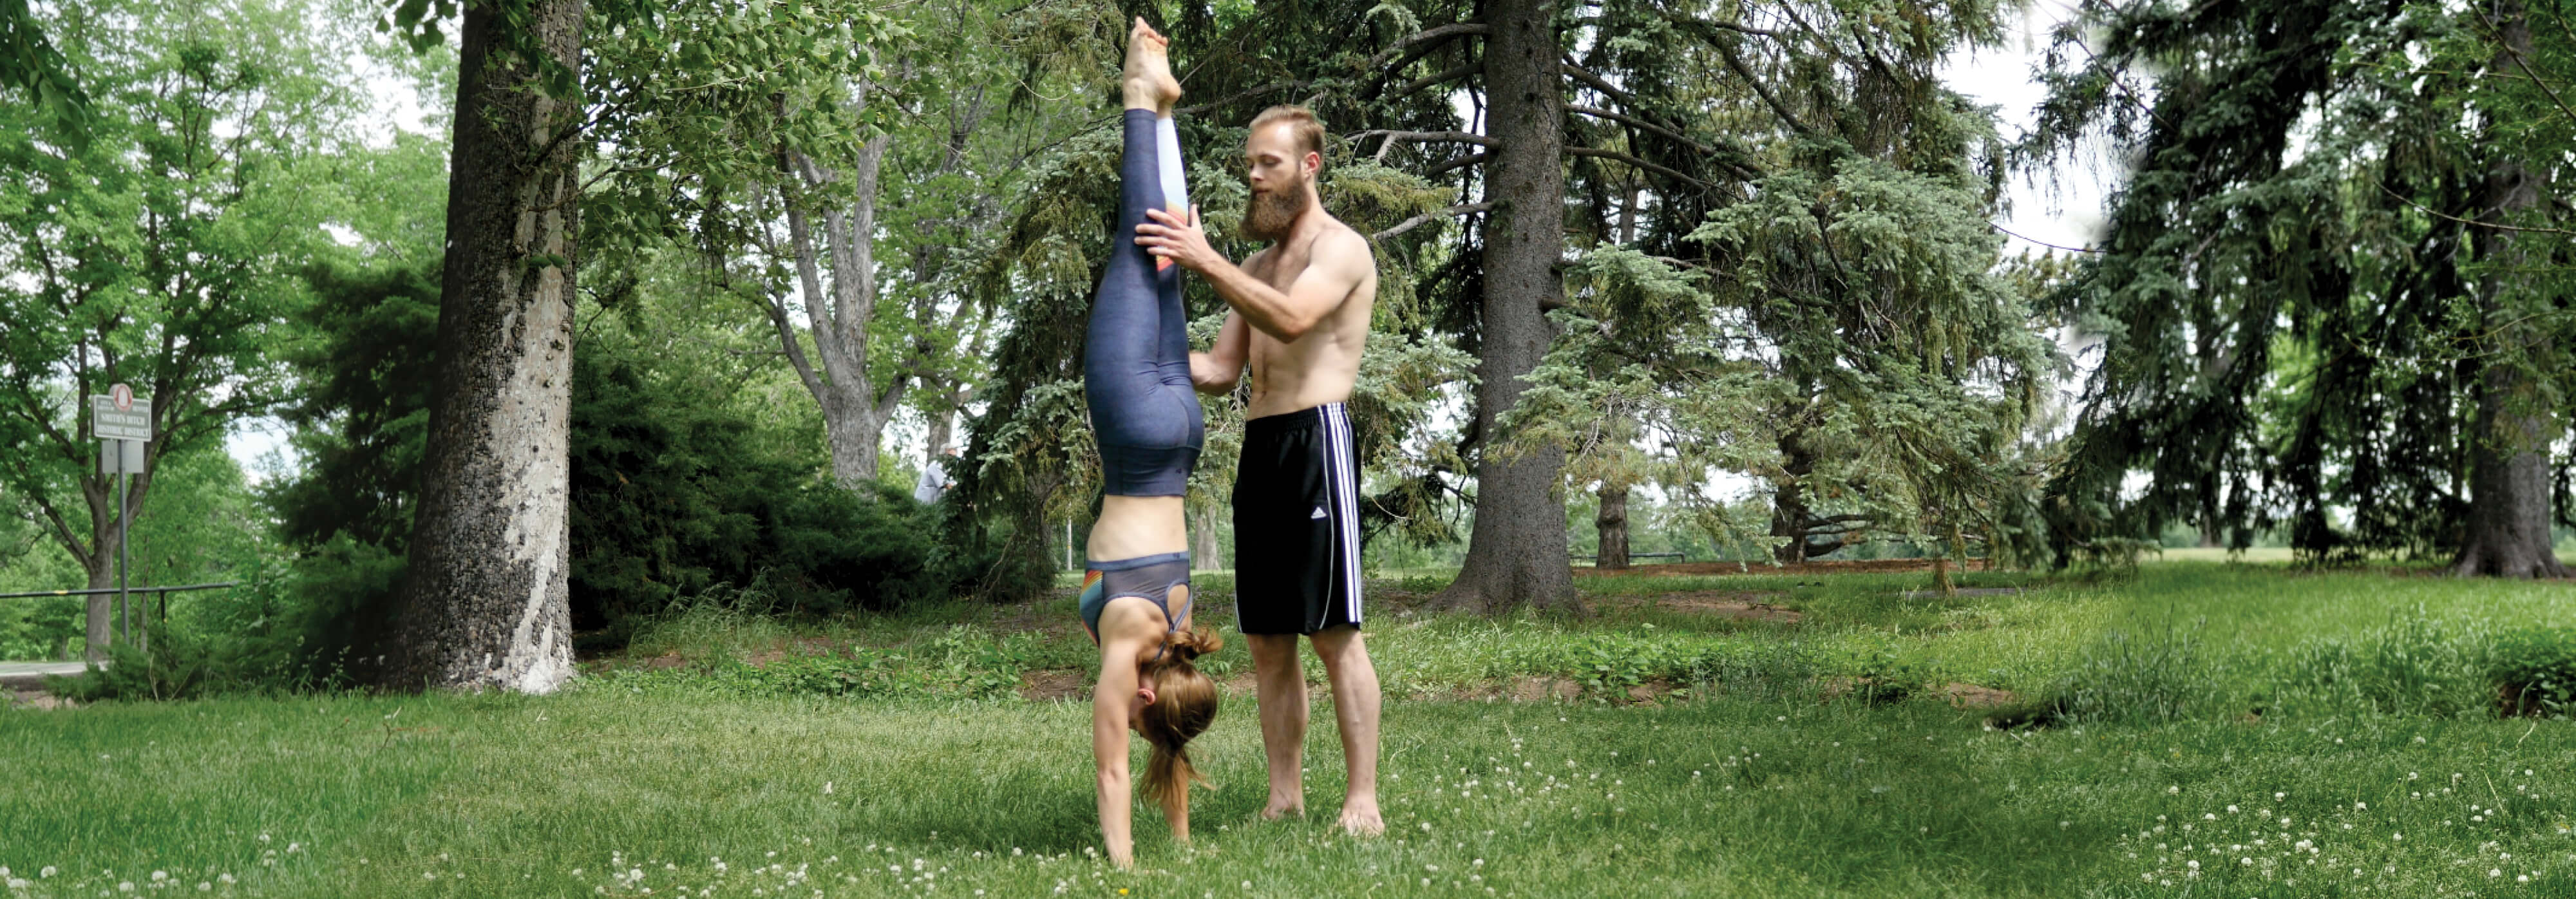 Partner GymnasticBodies handstand training 